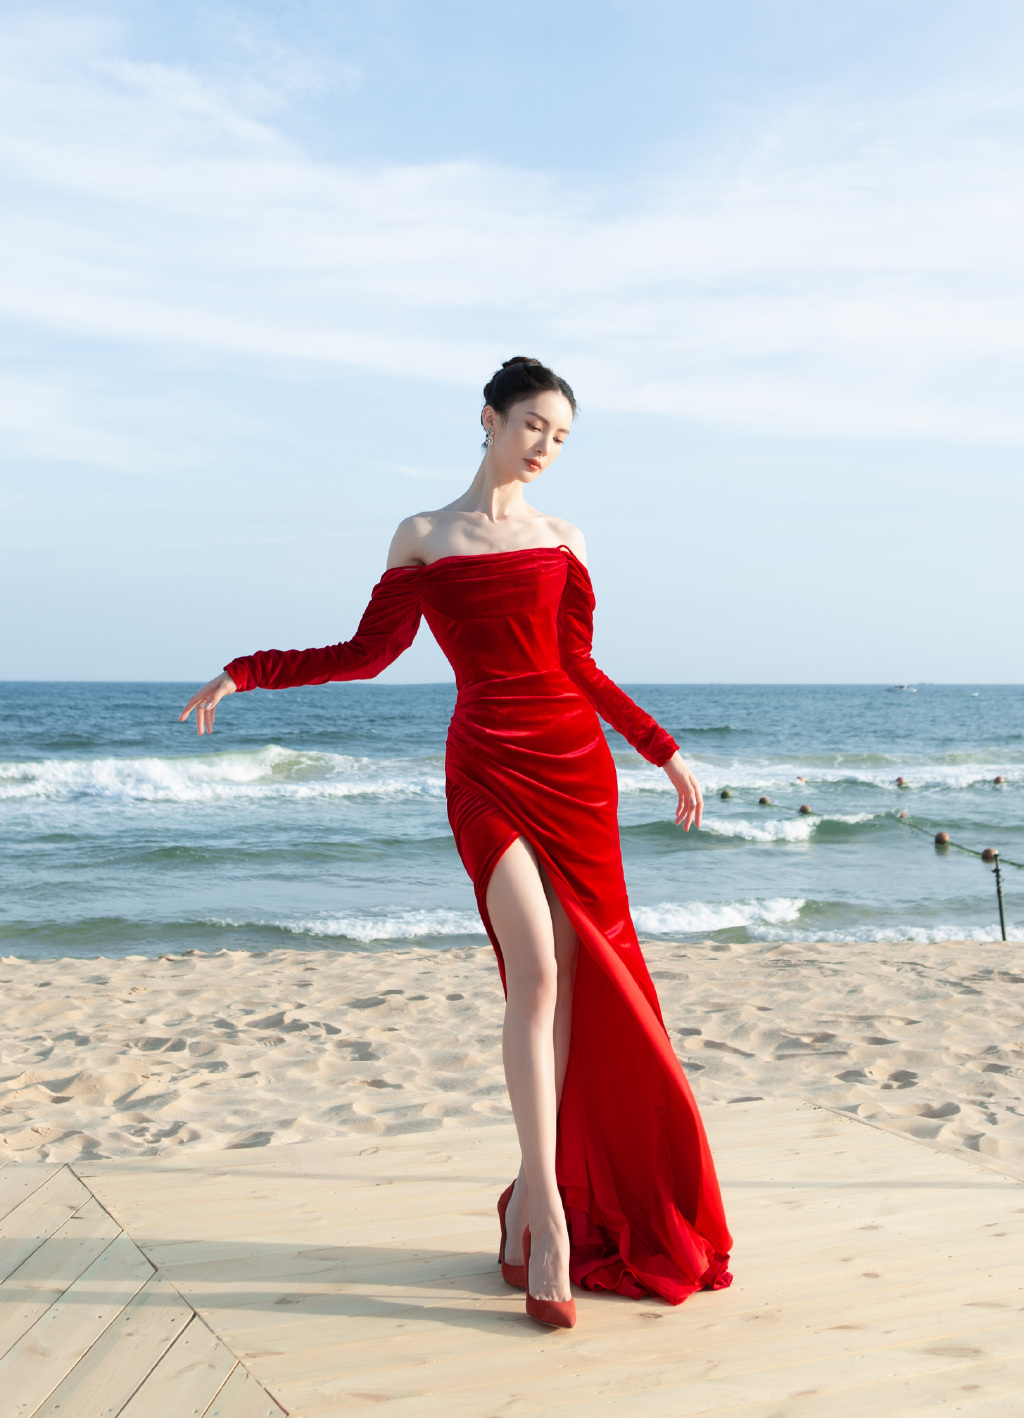 金晨在海边穿上高开叉红裙美腿修长气质高贵优雅（5/6） - 图片 - 名腿网